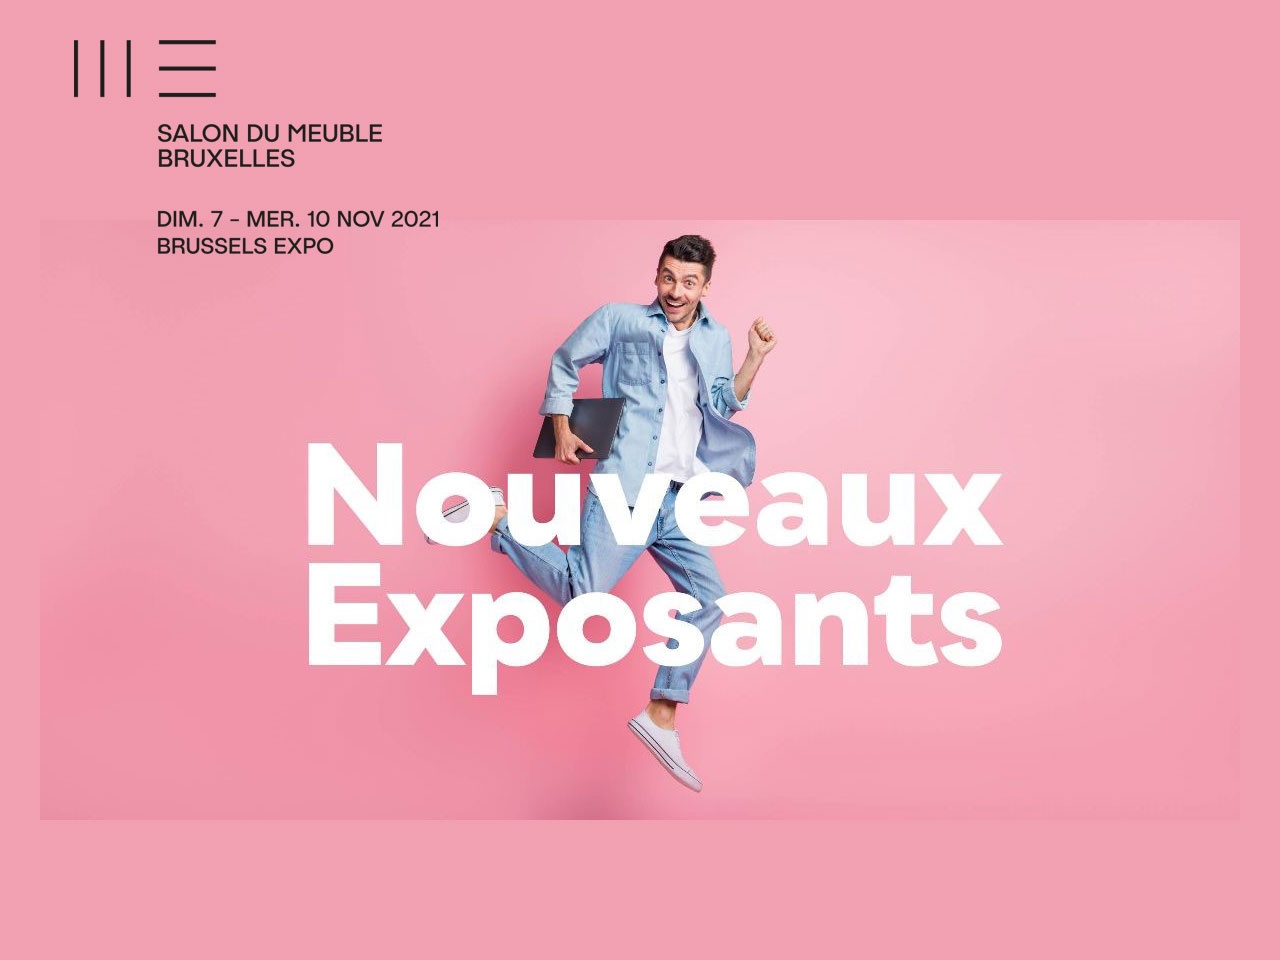 Le Salon du Meuble de Bruxelles, ouvrira ses portes le 7 novembre 2021 : Petit tour d’horizon des nouveaux exposants !